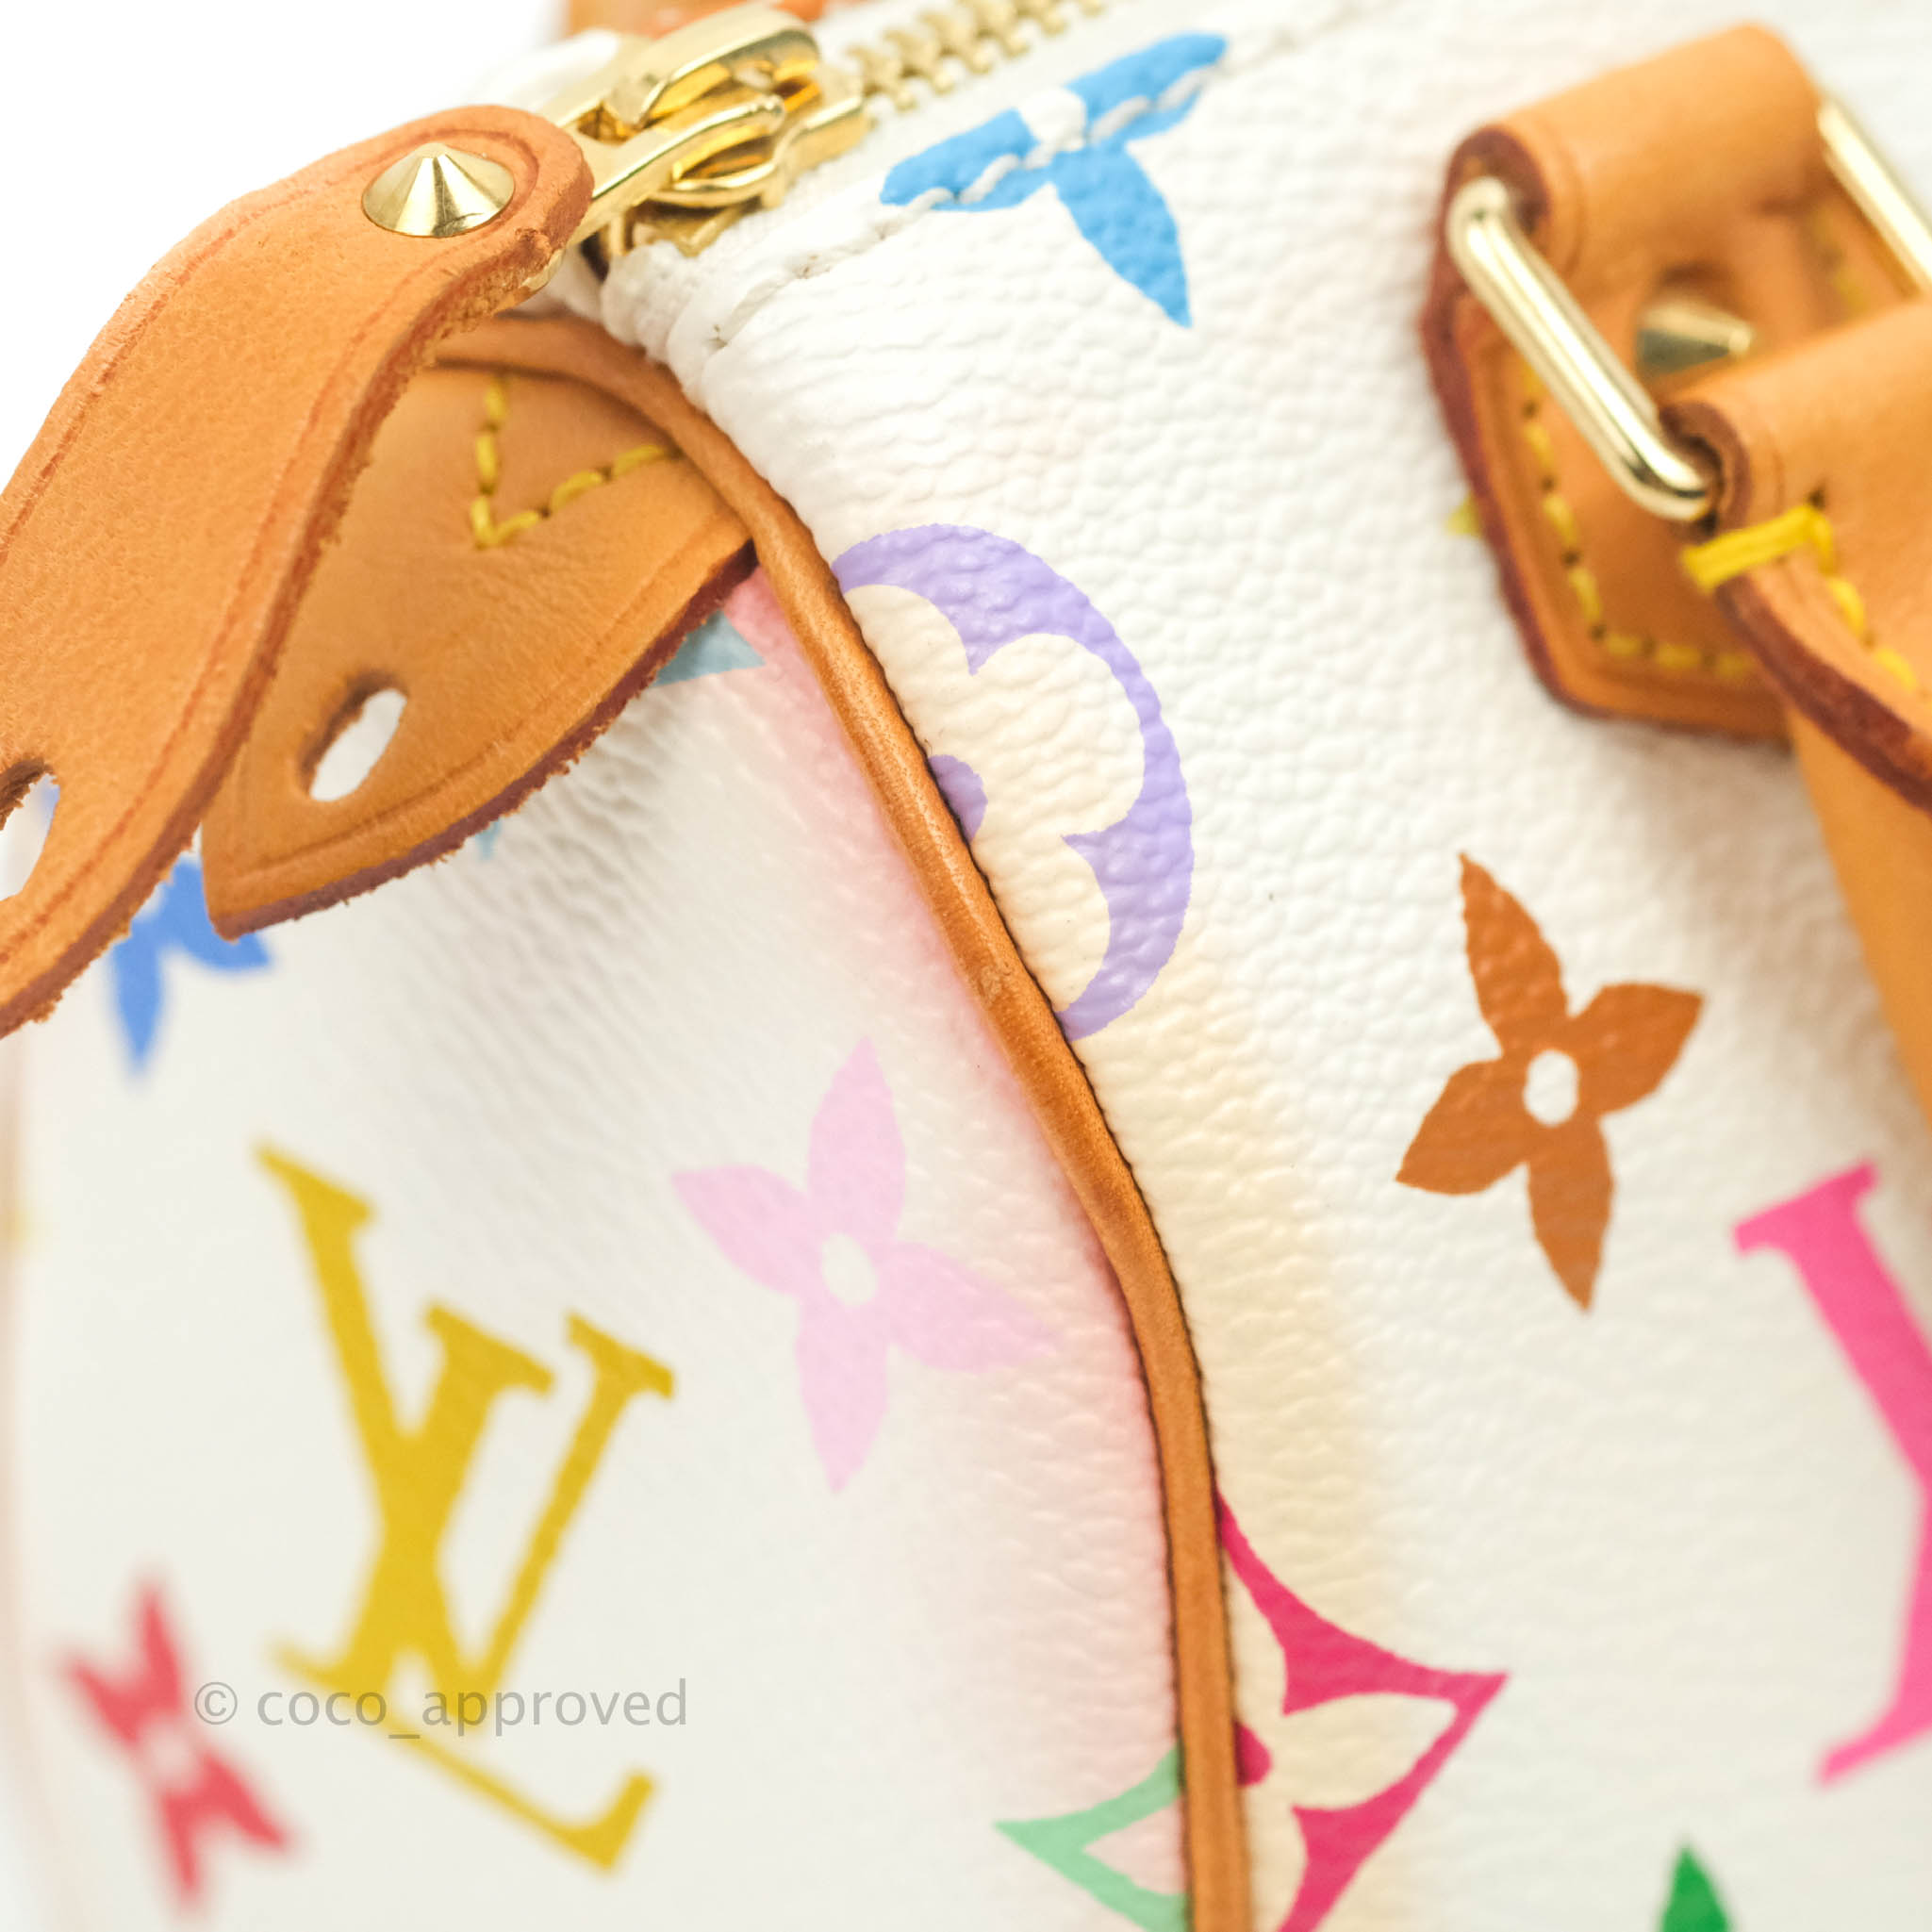 Louis Vuitton Takashi Murakami Nano Speedy Handbag – vintagebonbon